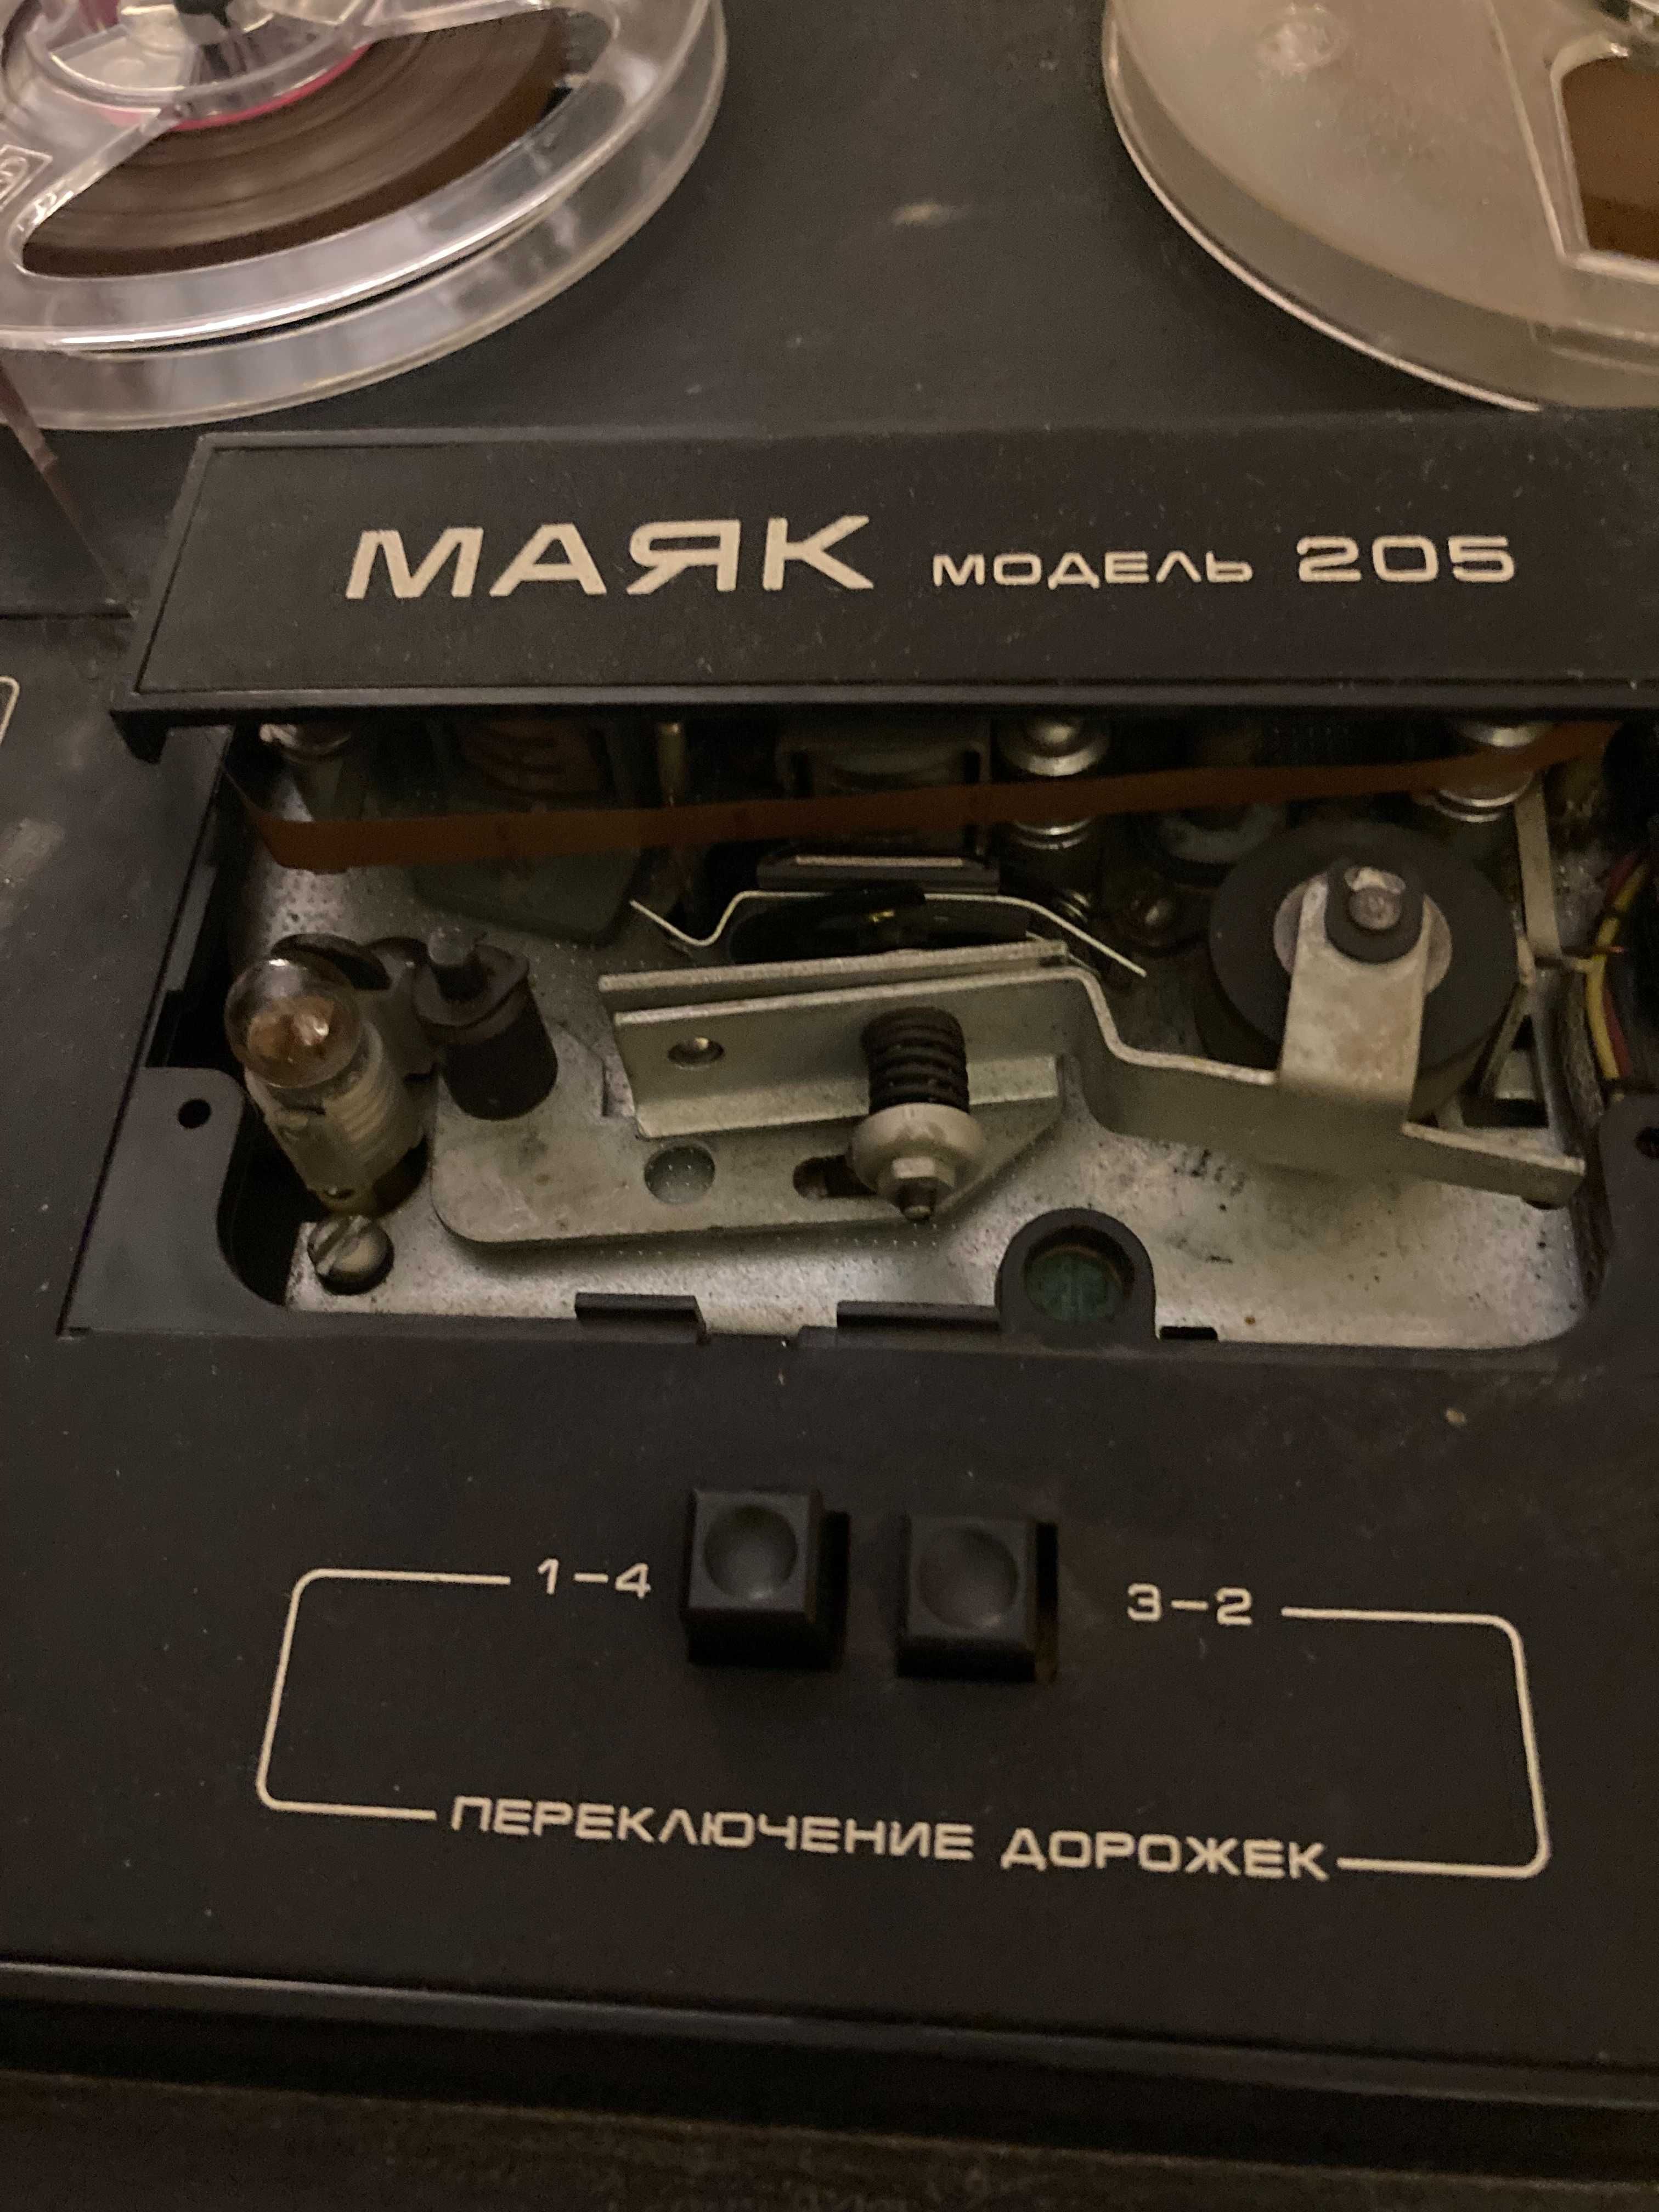 Катушечный стереофонический магнитофон "Маяк-205".